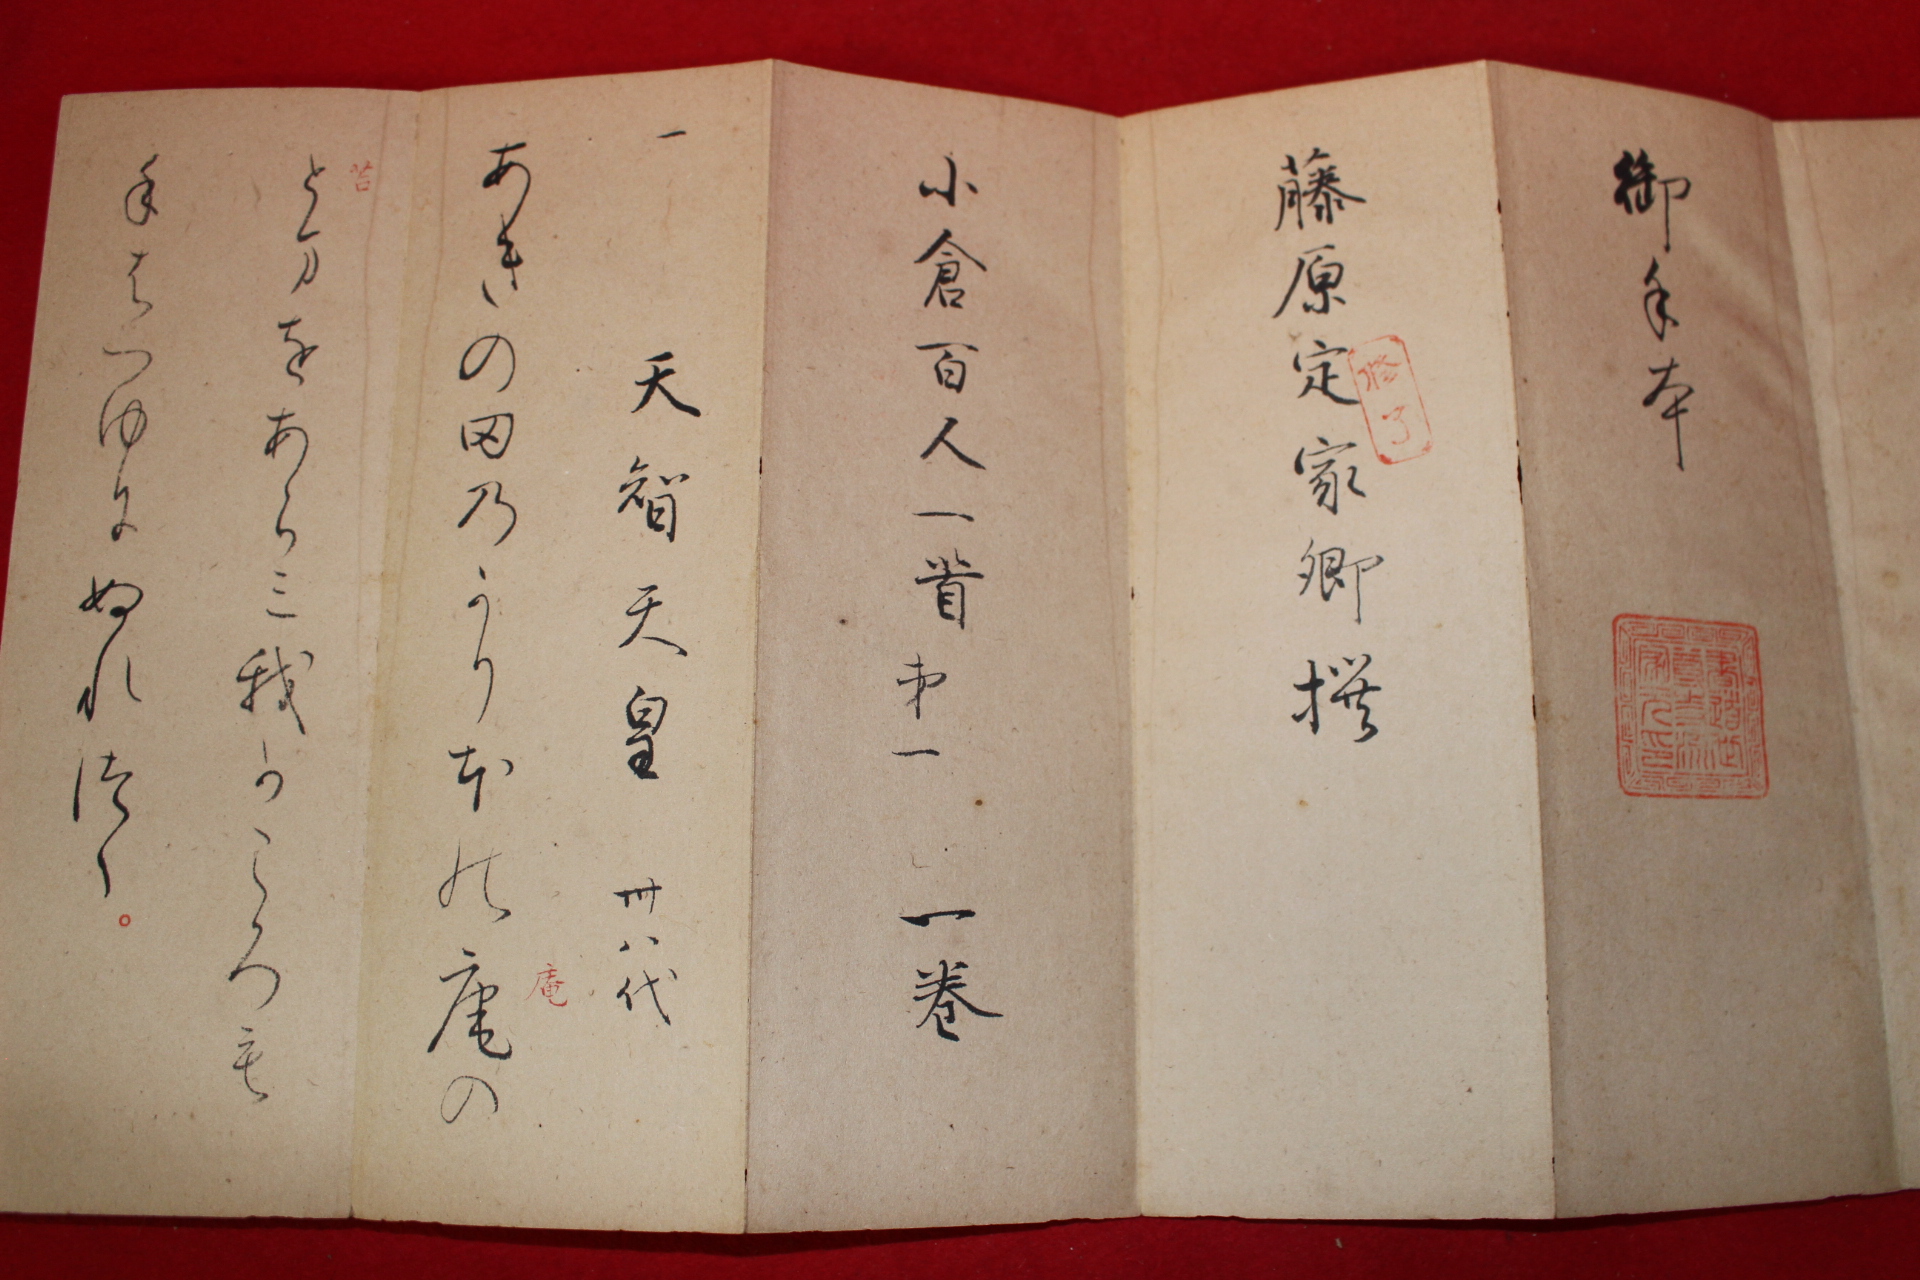 에도시기 일본필사절첩본 소창백인일수